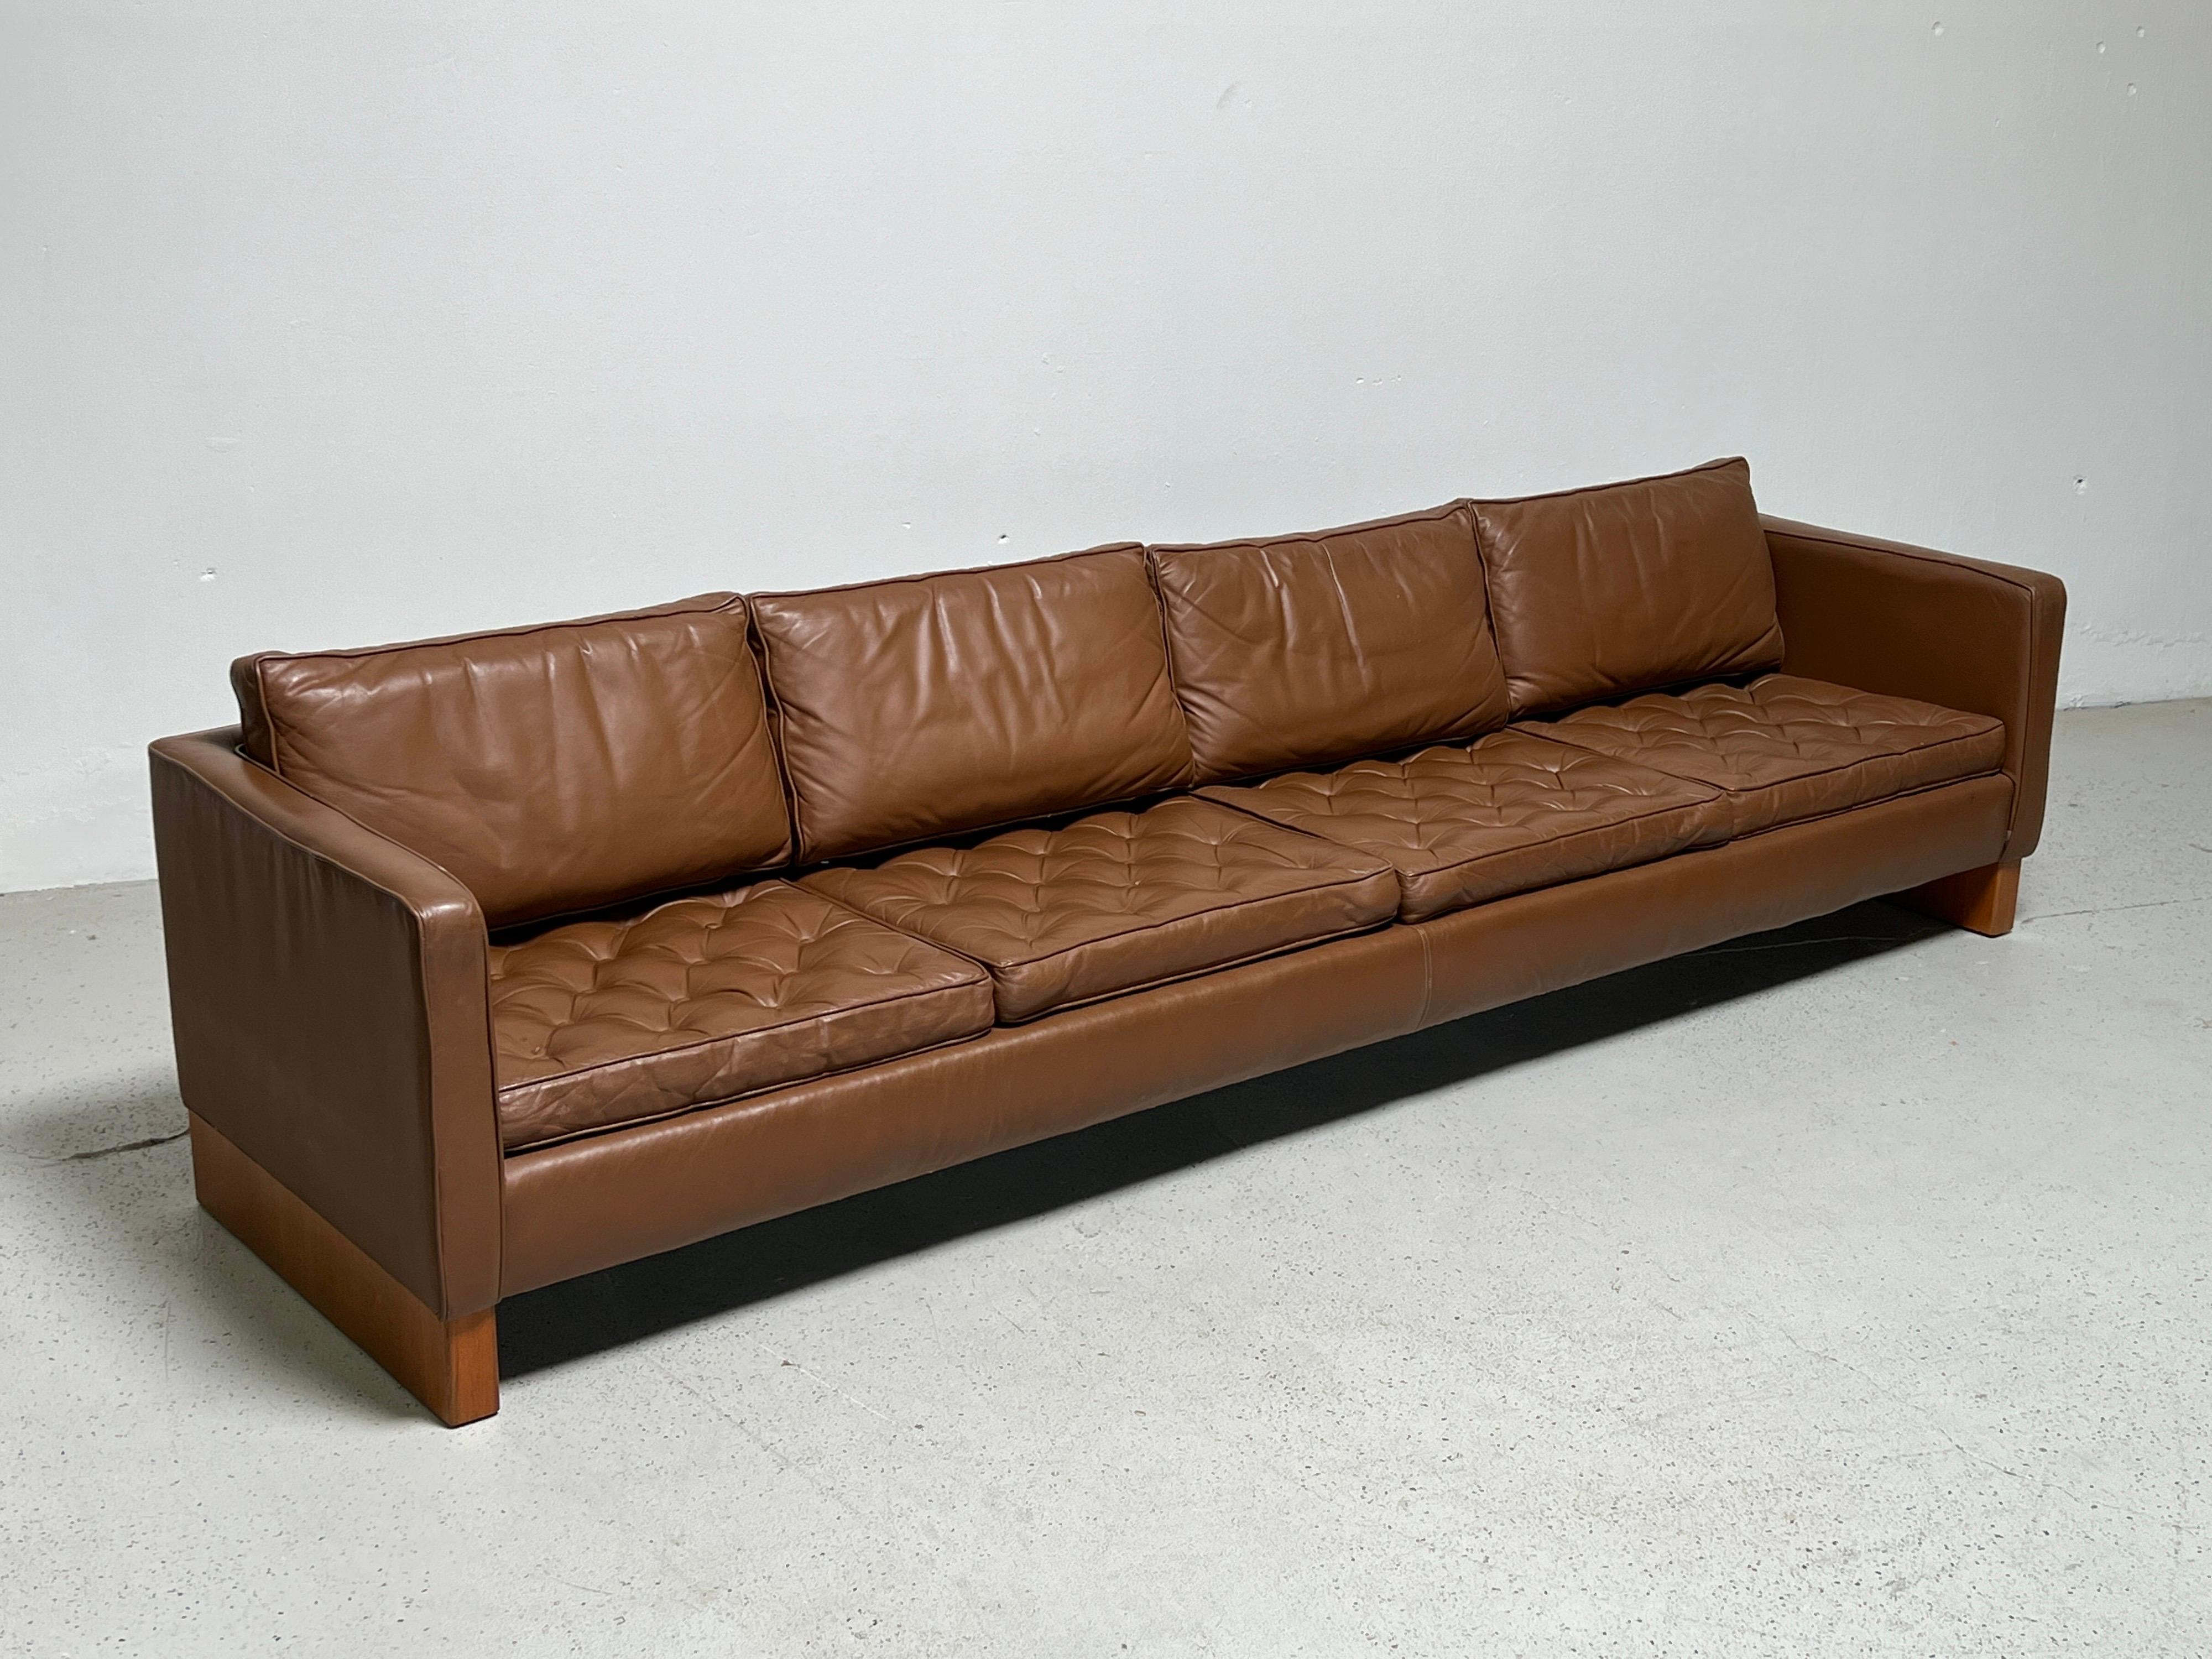 Mies Van Der Rohe Foor Knoll Sofa In Good Condition For Sale In Dallas, TX